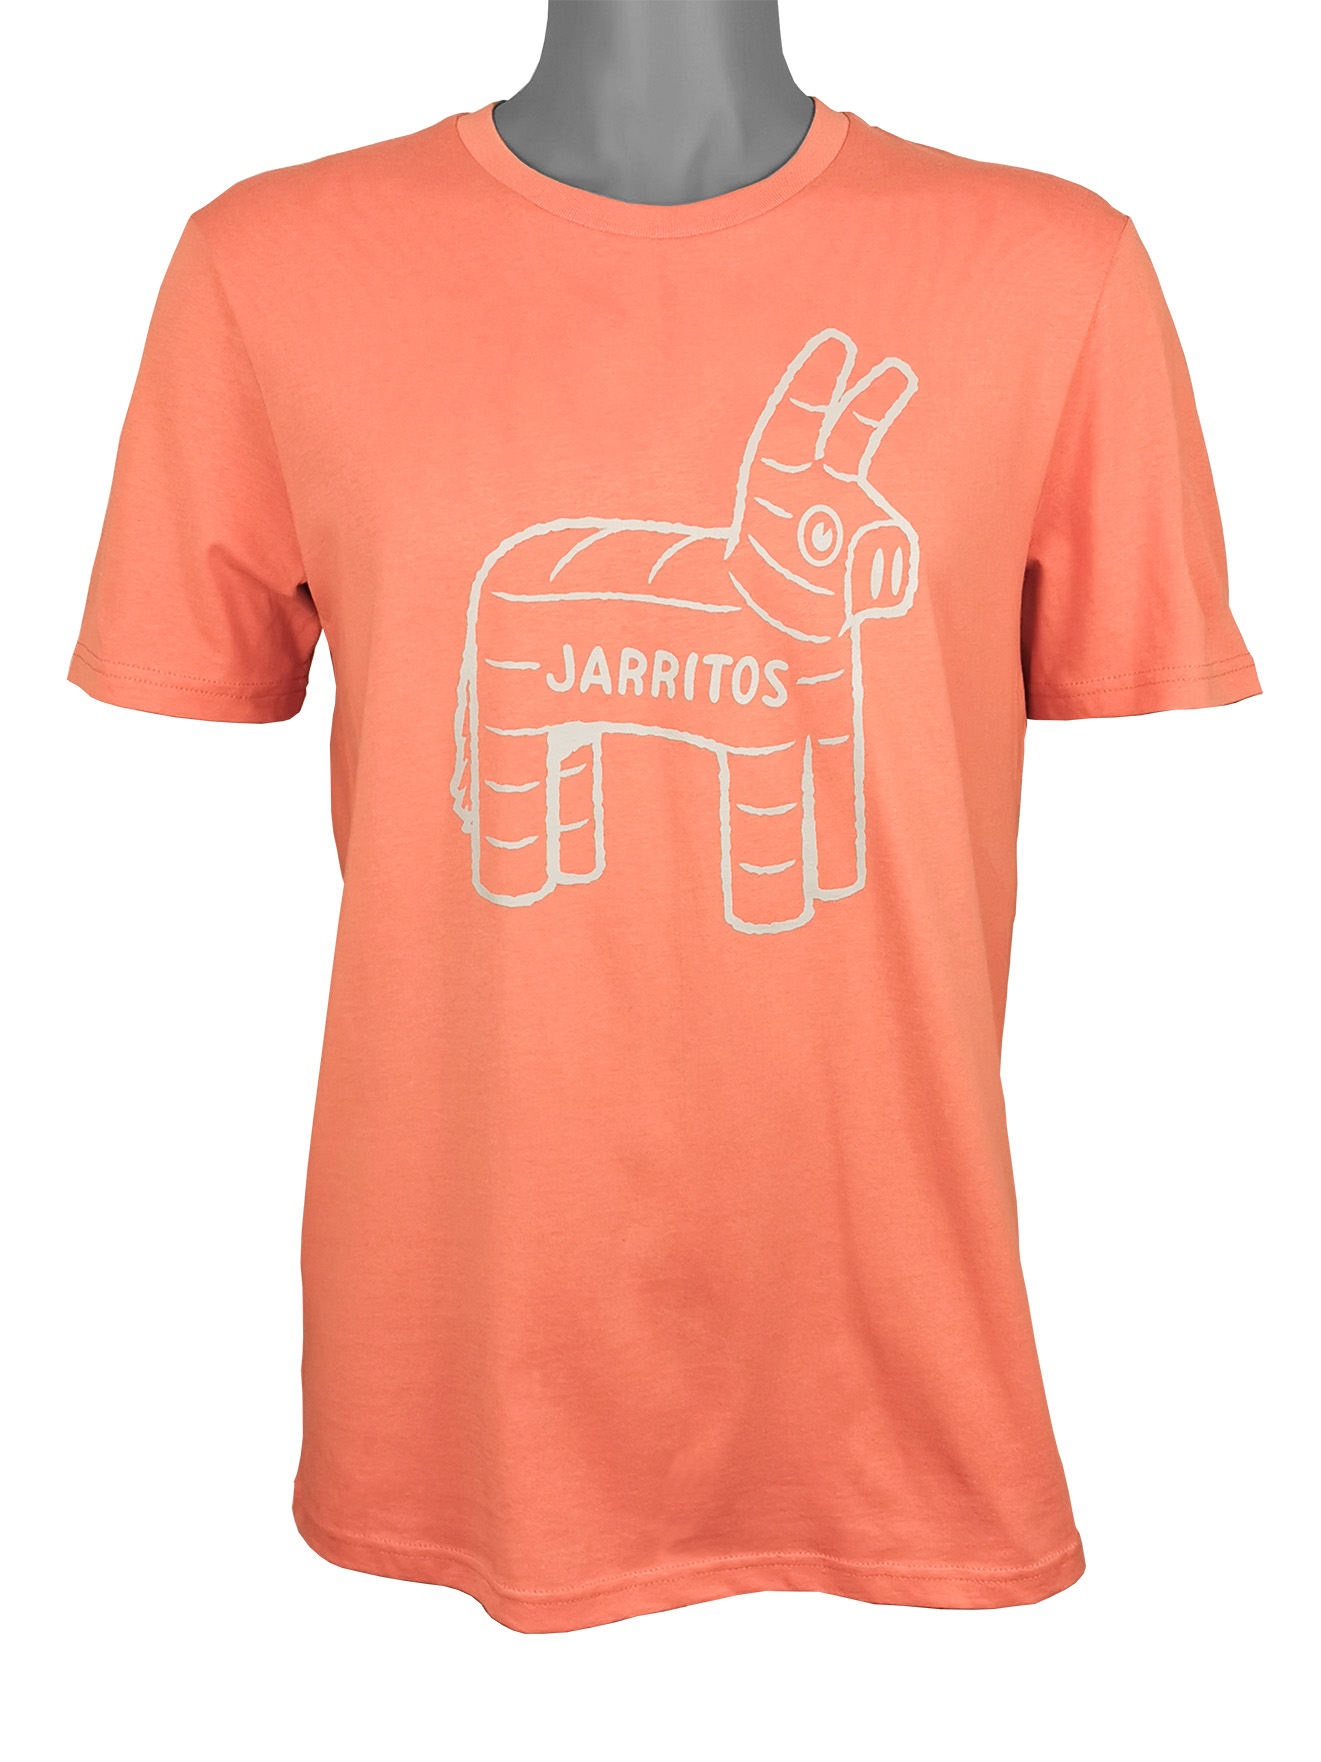 JARRITOS Unisex T-Shirt "Siembra"